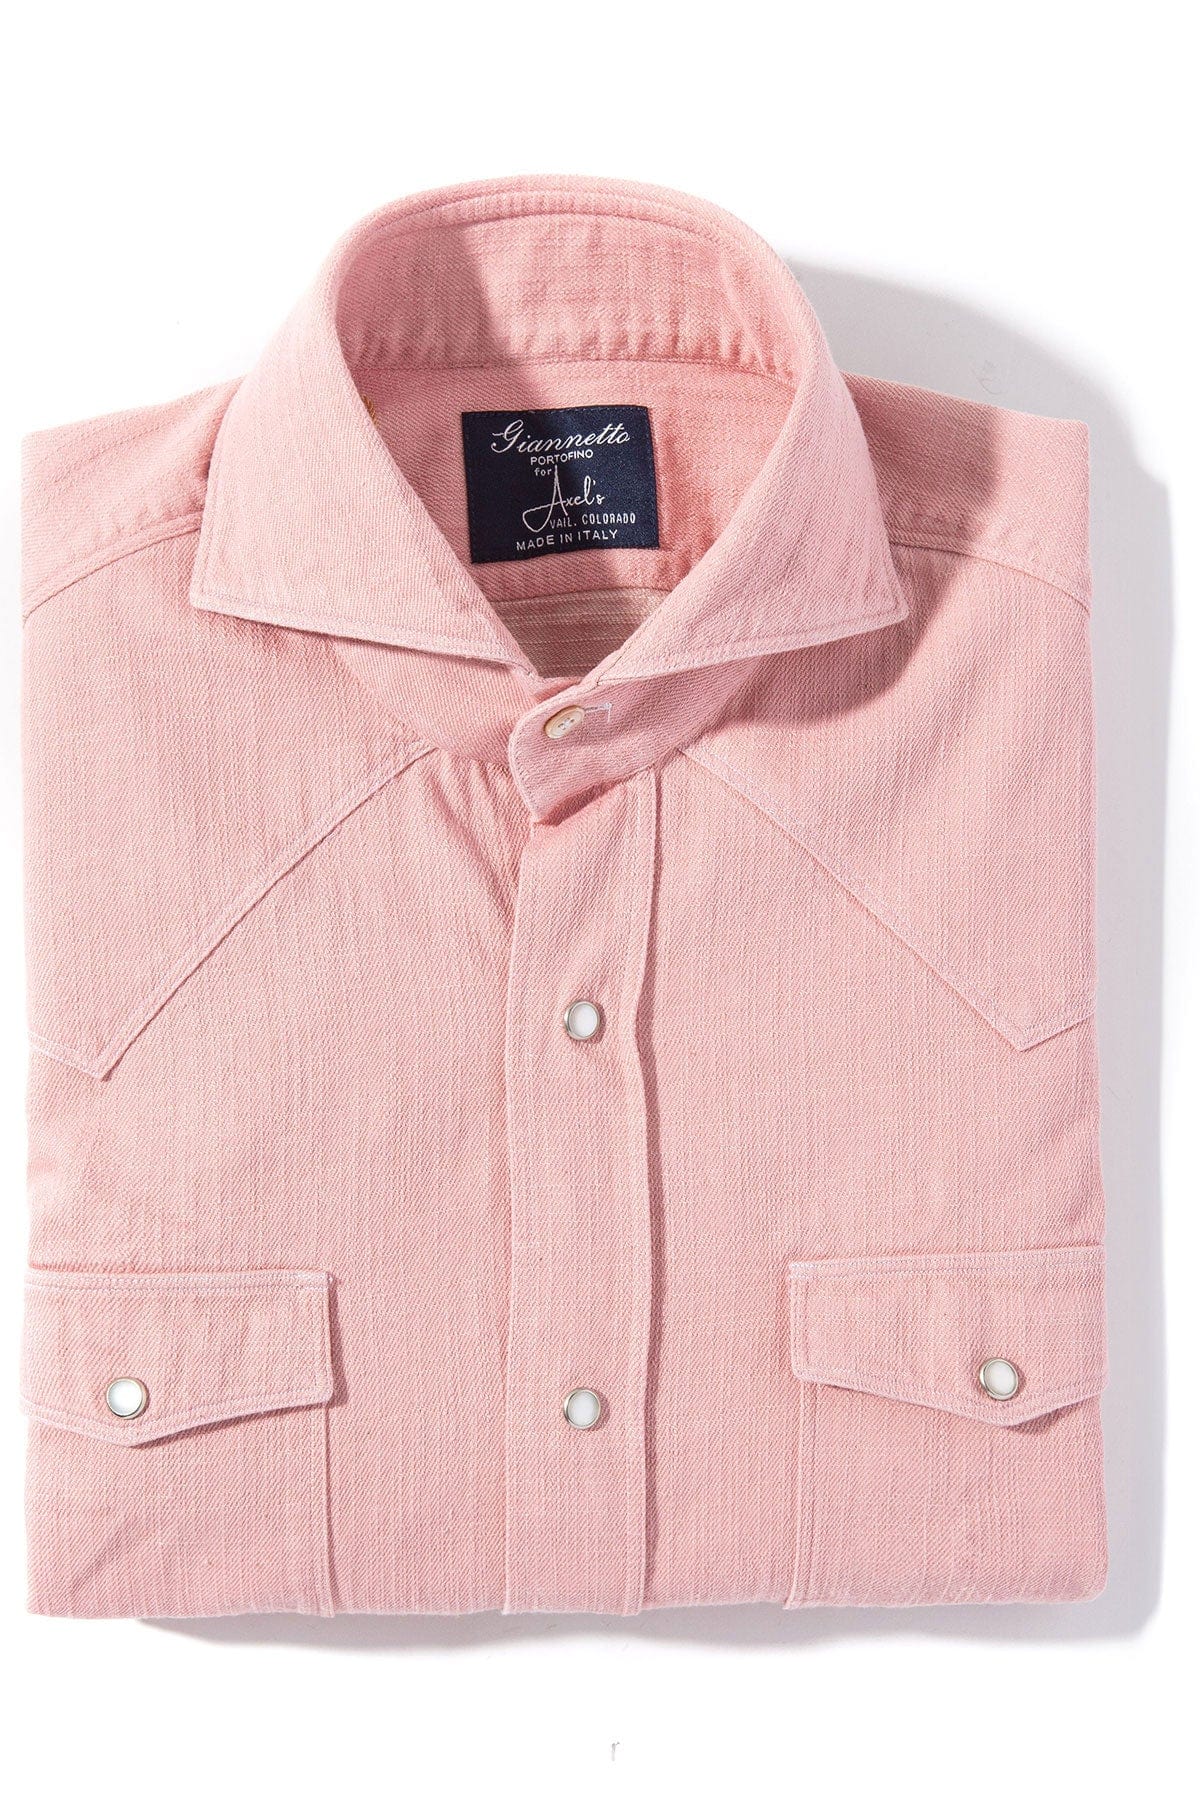 Lourmarin Denim Shirt in Pink - AXEL'S